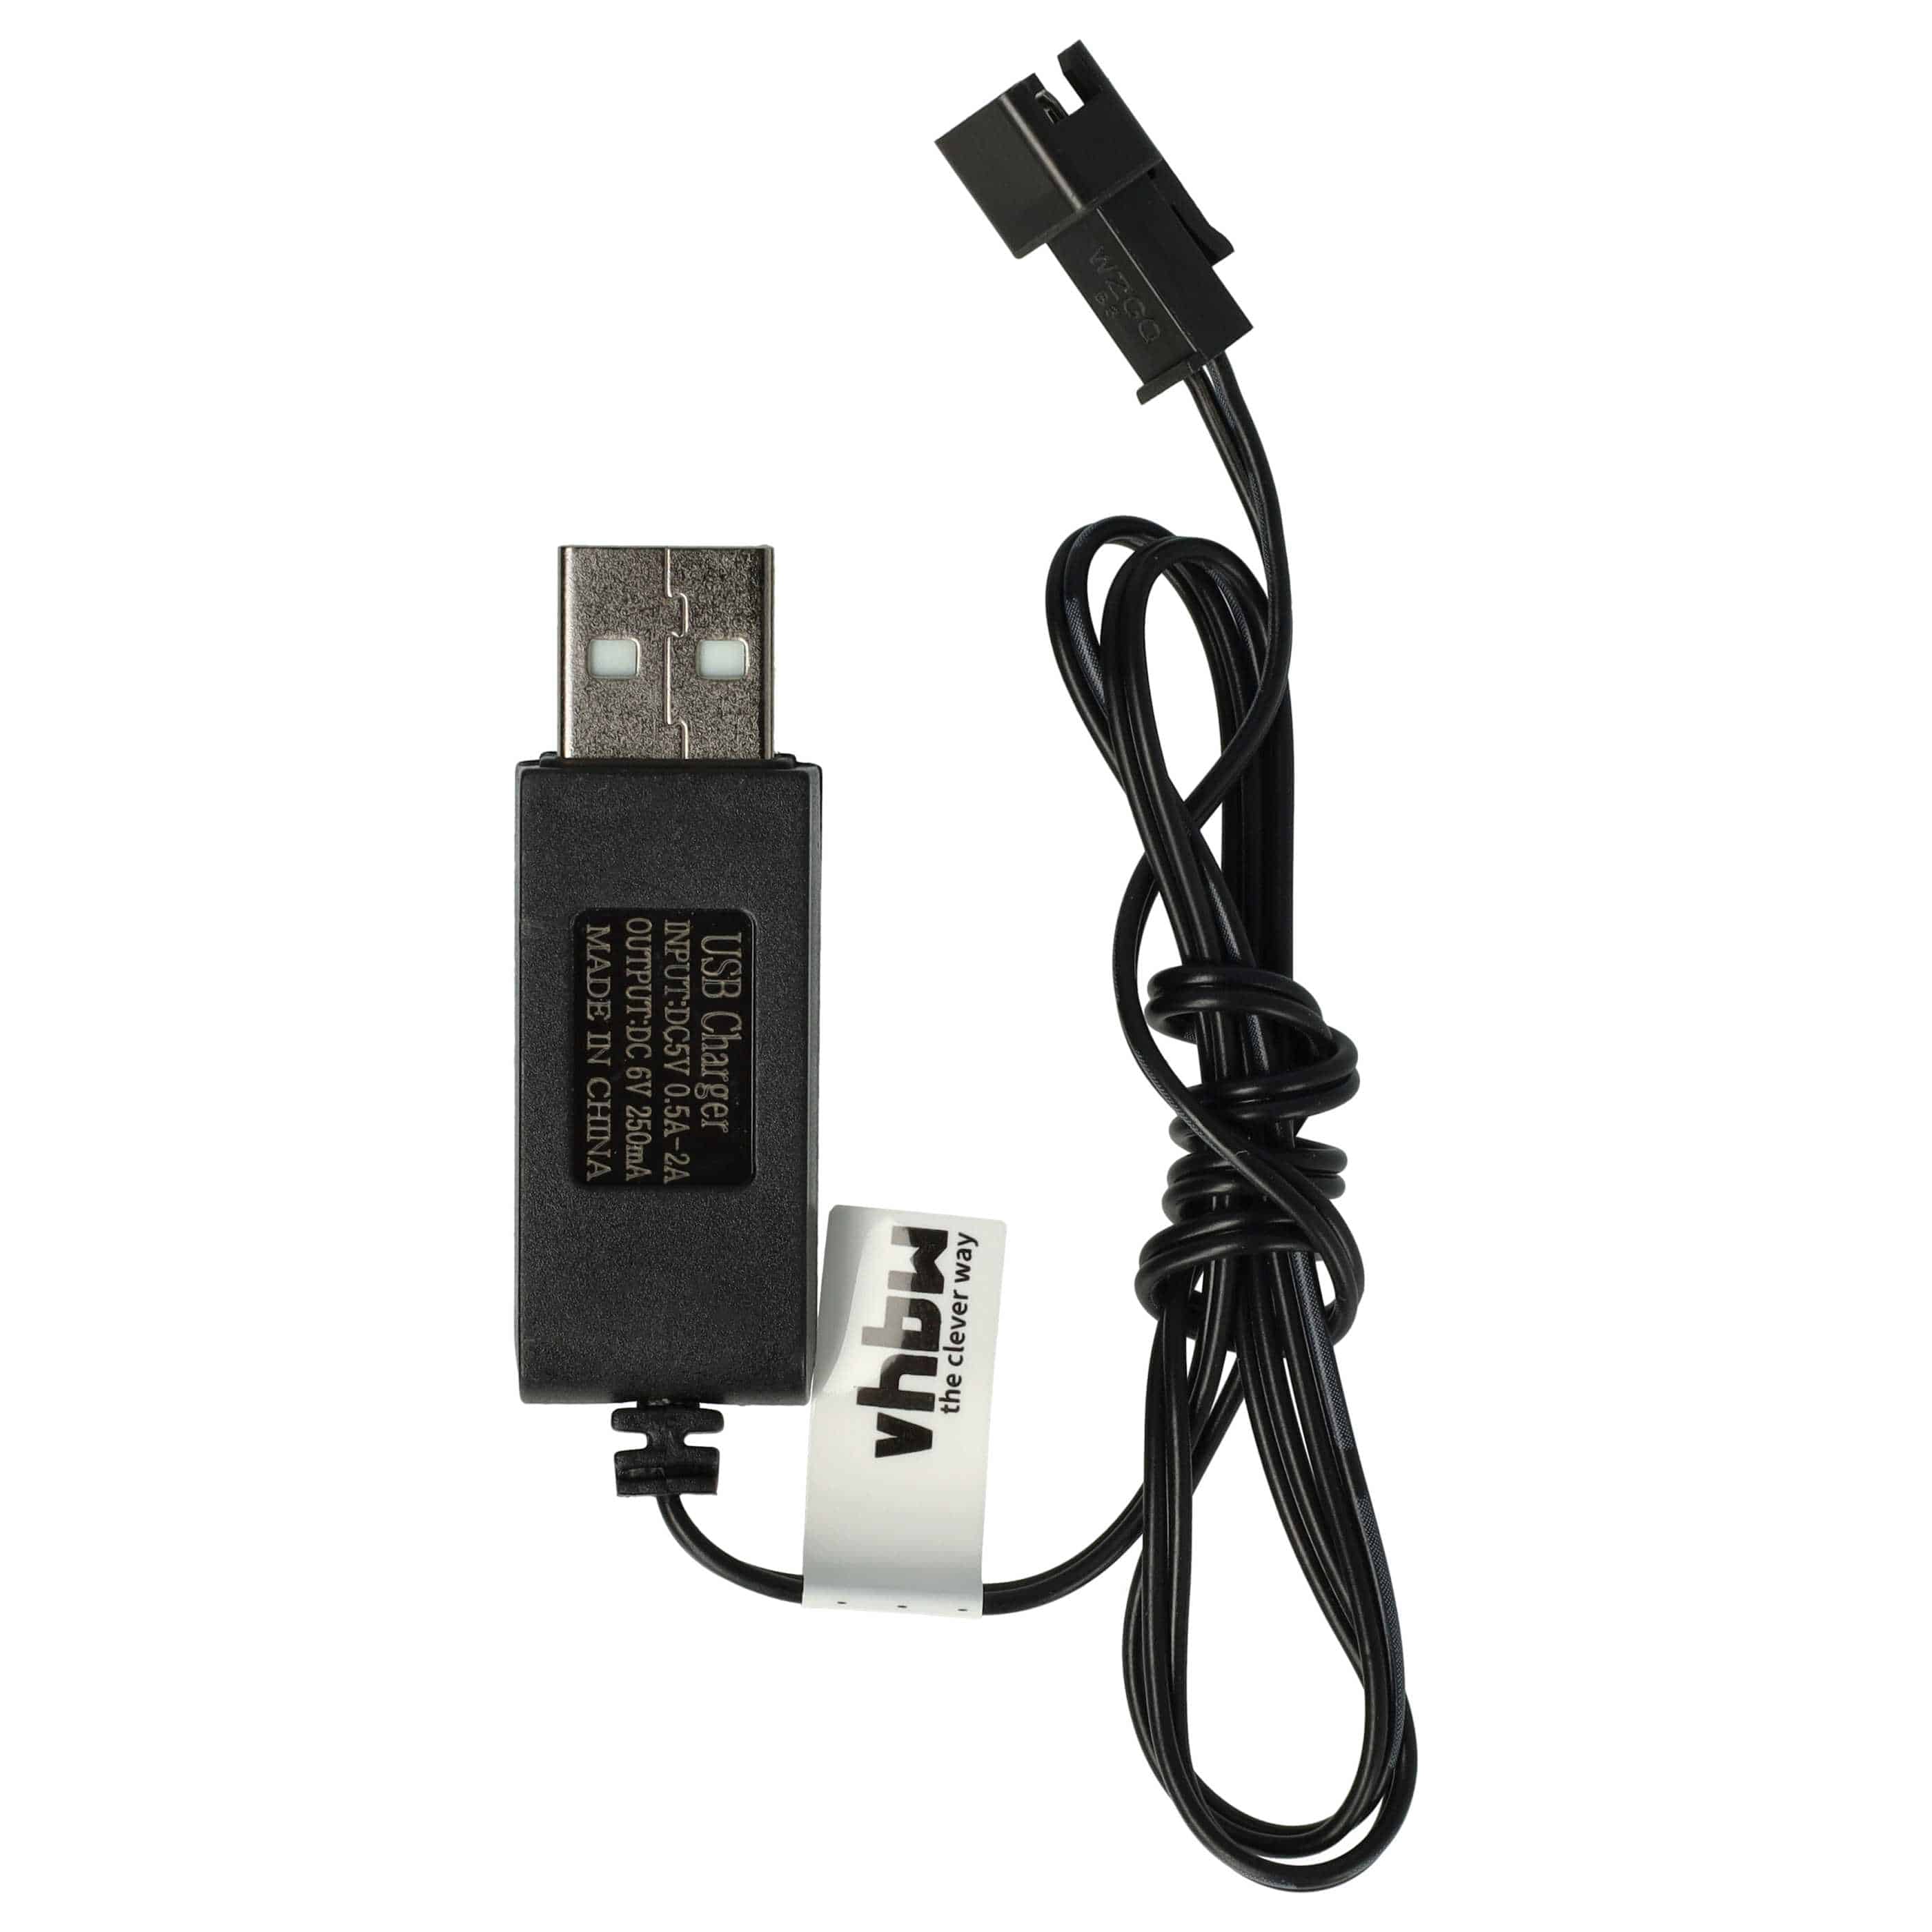 Cable de carga USB para batería SM-2P, modelo RC - 60 cm 6 V